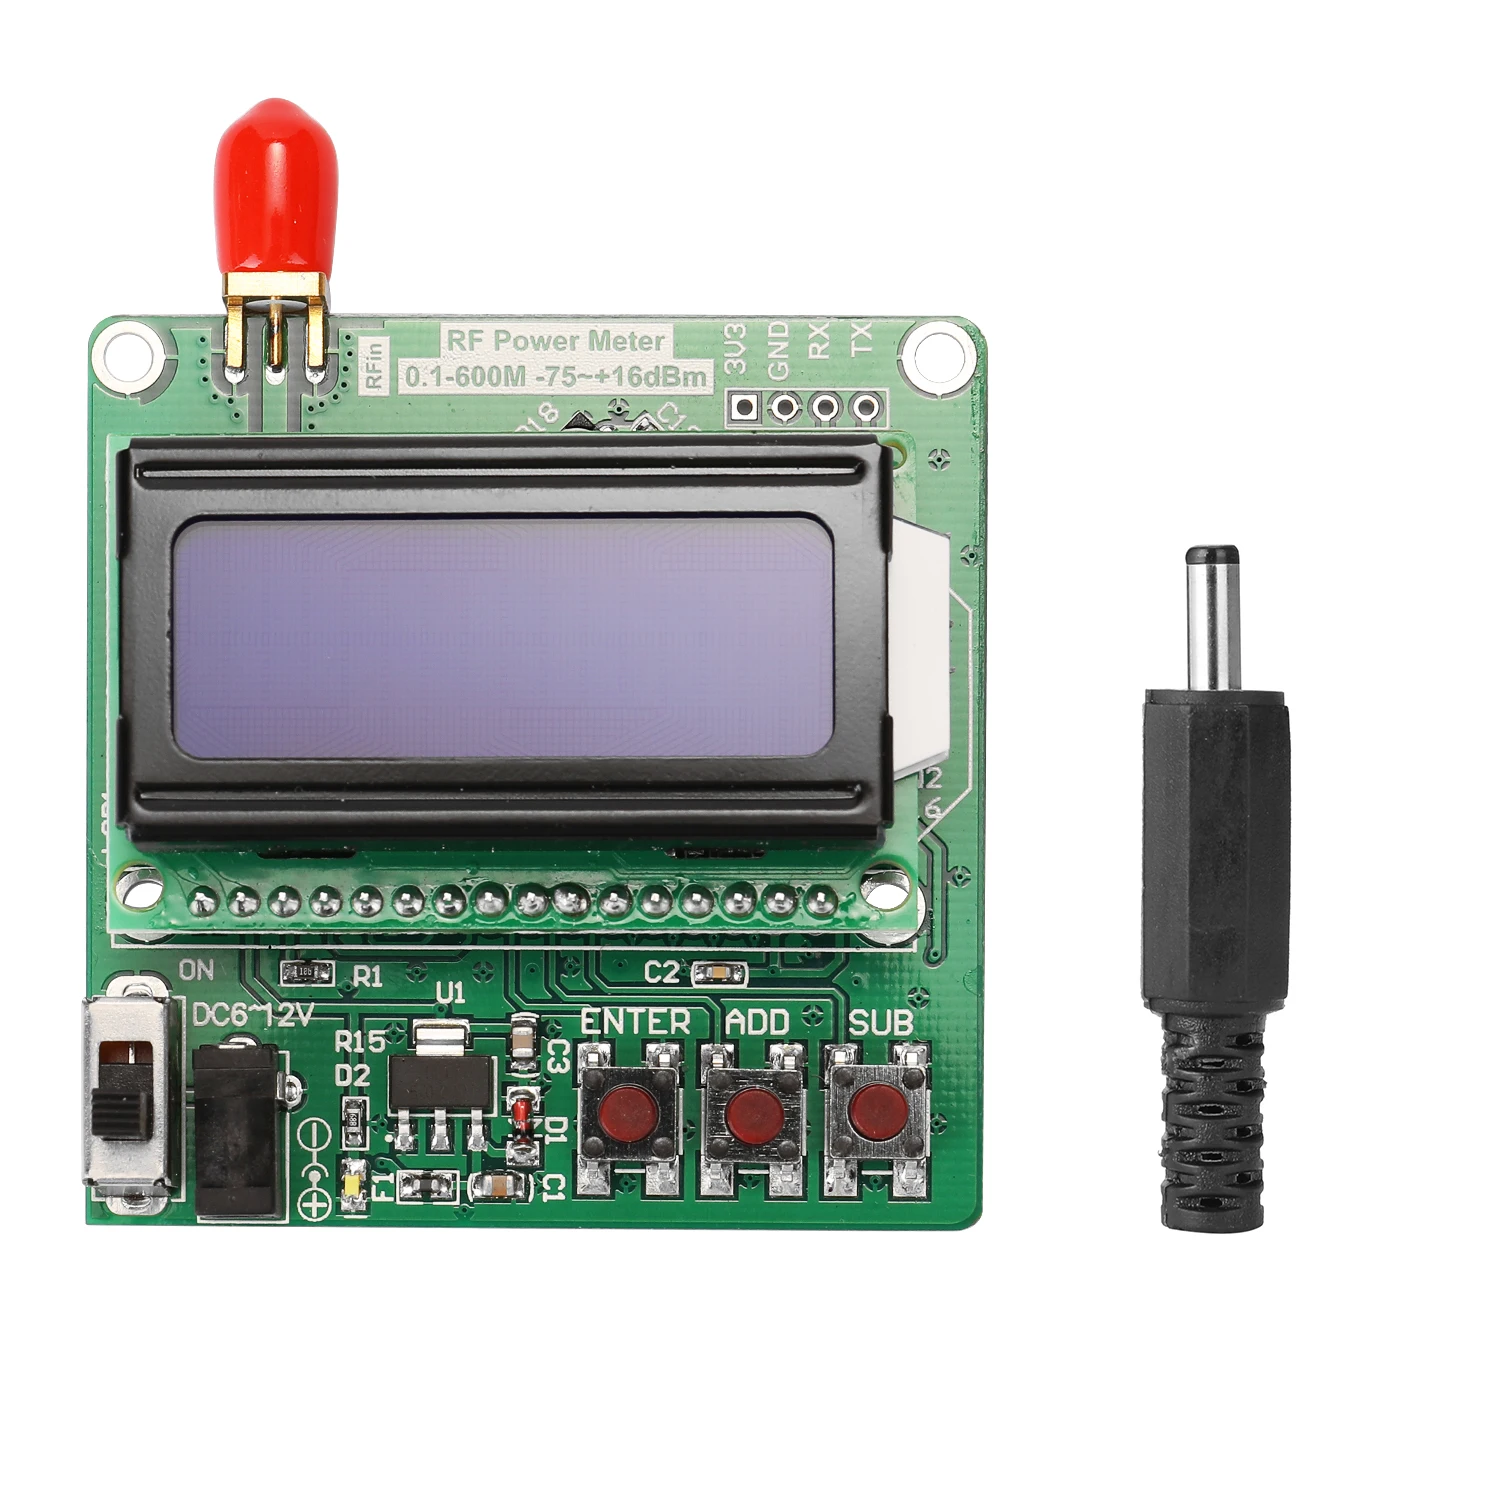 RF Moči Meter LCD Osvetlitev ozadja Digitalni Prikaz RF Moči Meter Modul -75~+16dBm 0.1-600MHz Radijske Frekvence Oslabitev Vrednosti